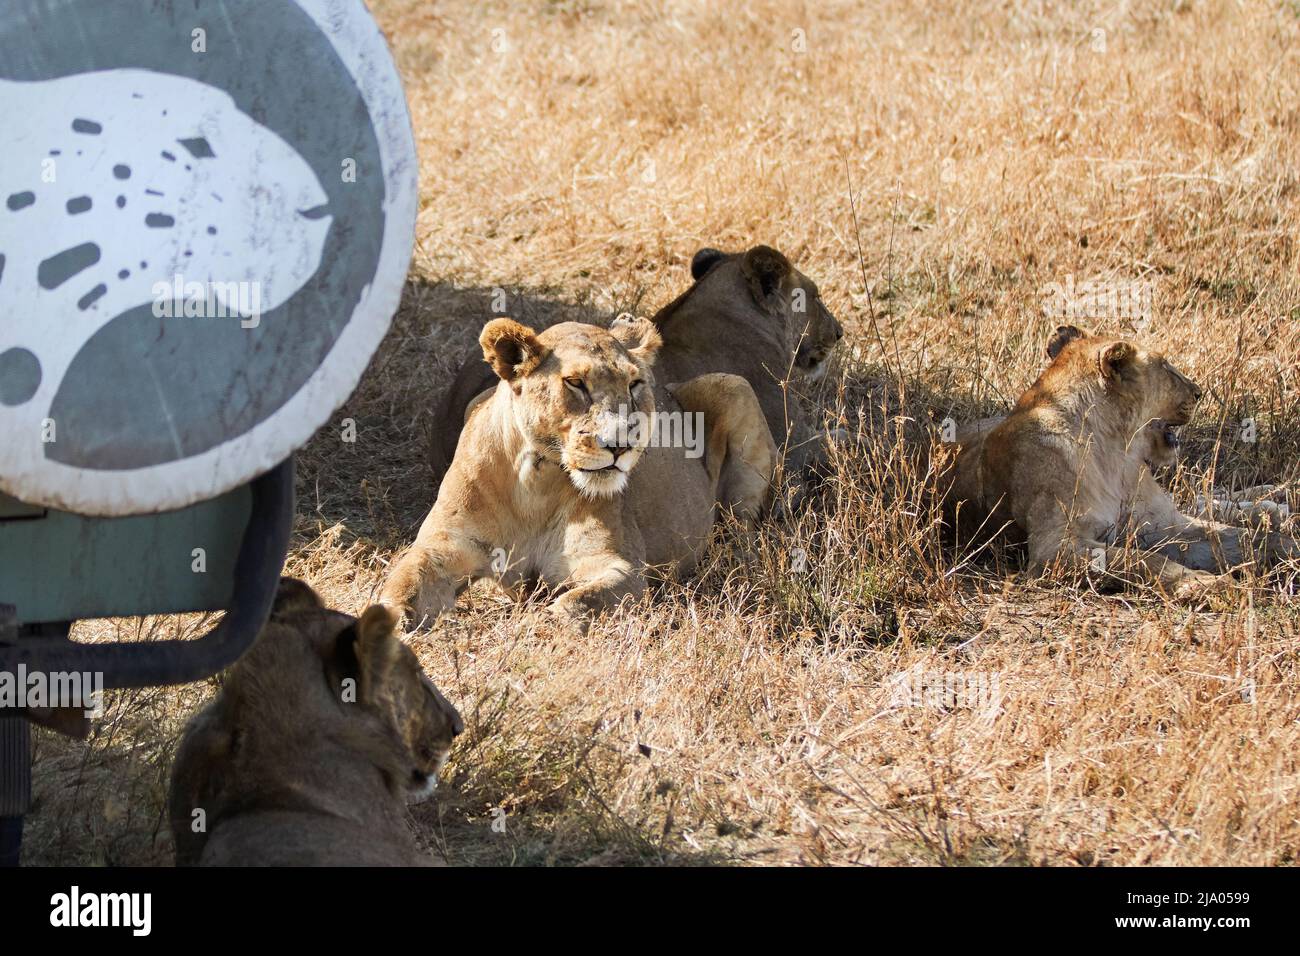 Un groupe de lions femelles se trouvant sur l'herbe à côté d'un véhicule de safari dans le parc national du Serengeti central, Tanzanie, Afrique. Banque D'Images